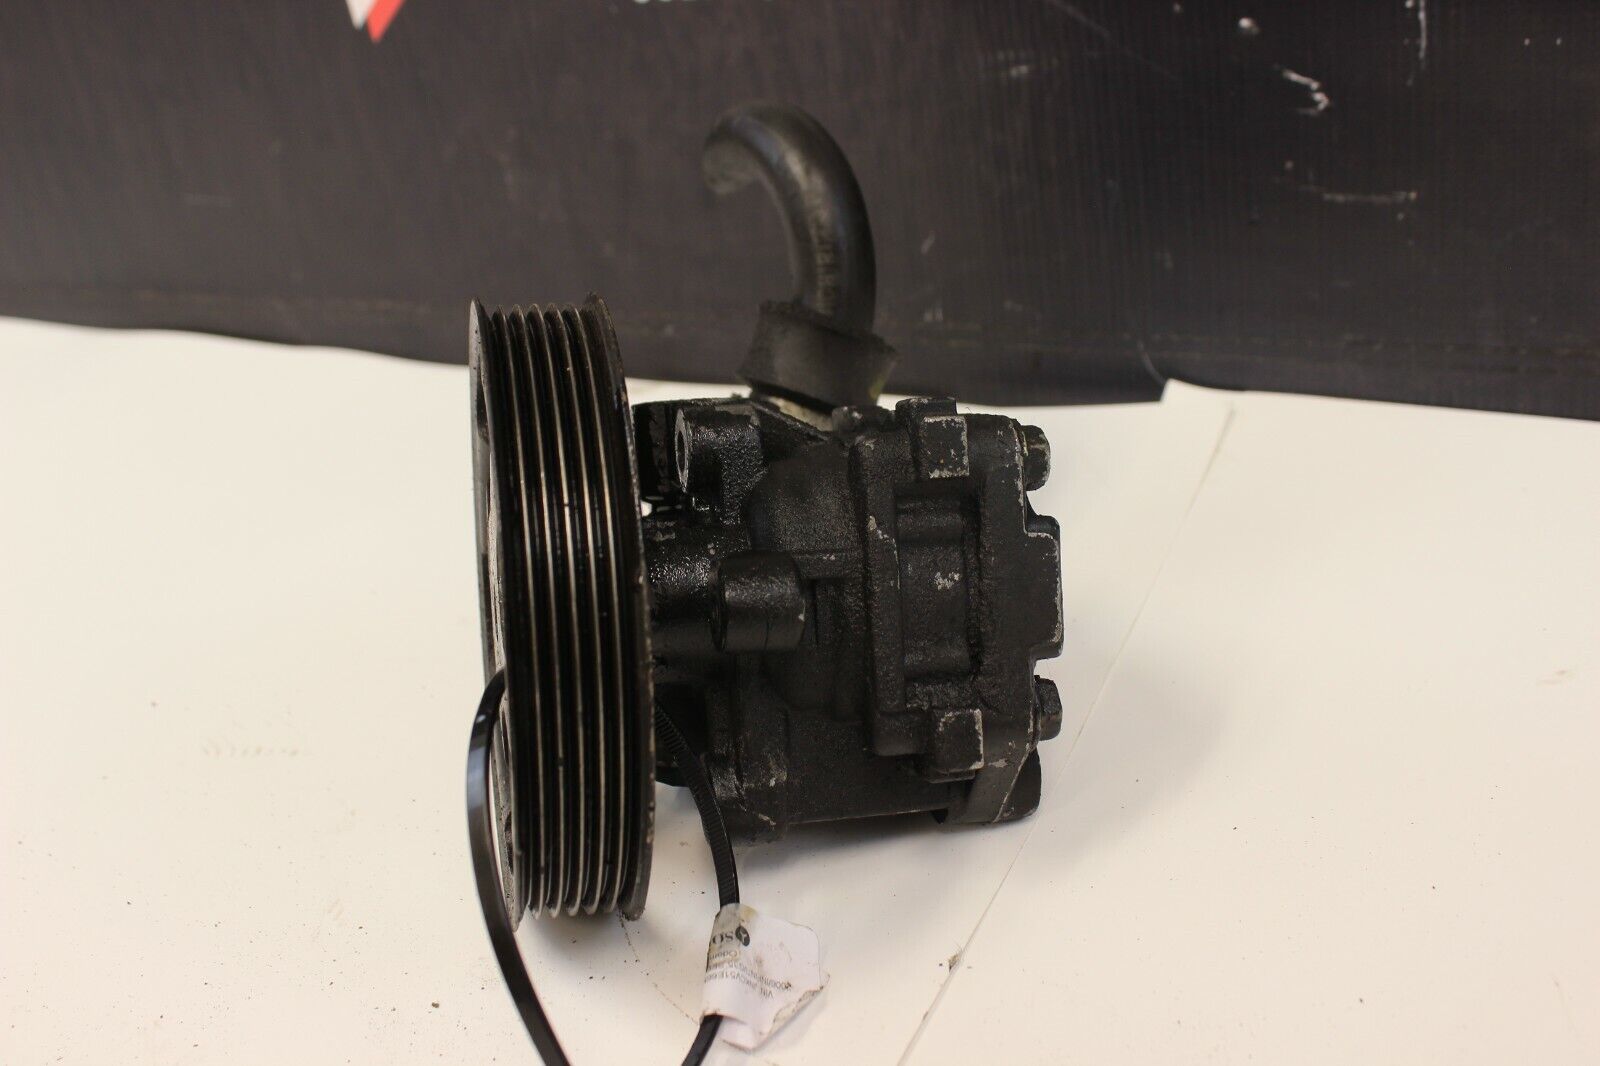 05-06 Infiniti G35 SEDAN Manual Power Steering Pump With Pulley OEM